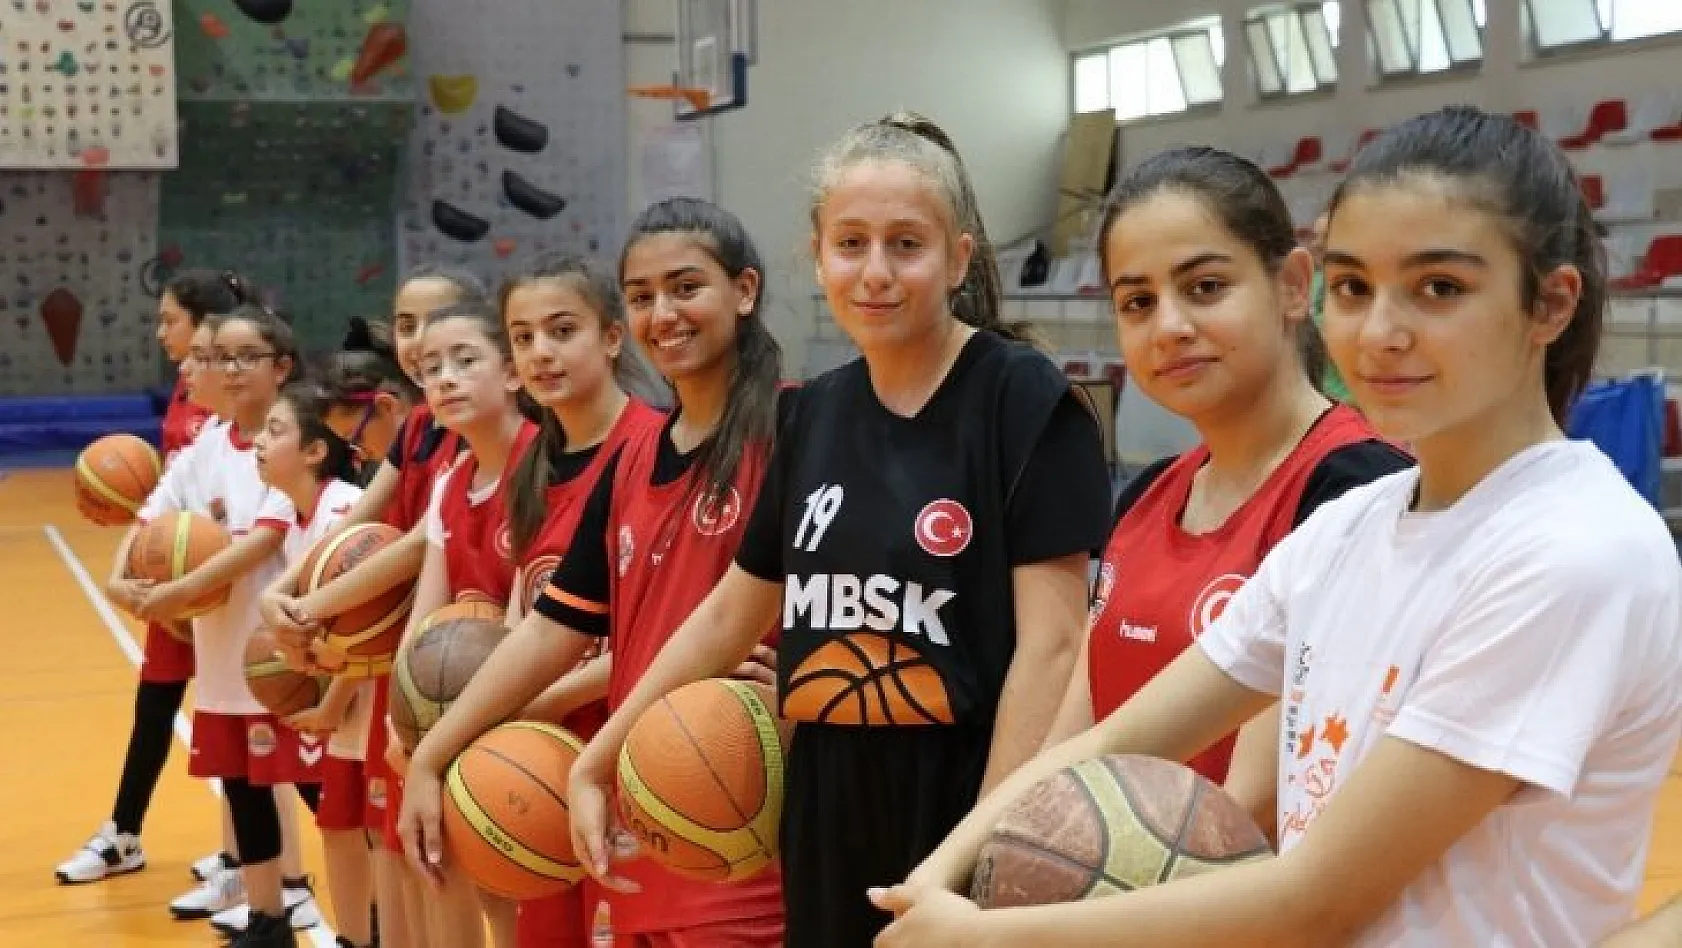 'Basketbol Aracılığı ile Fırsat Eşitliği' projesinin ikinci toplantısı Malatya'da yapıldı